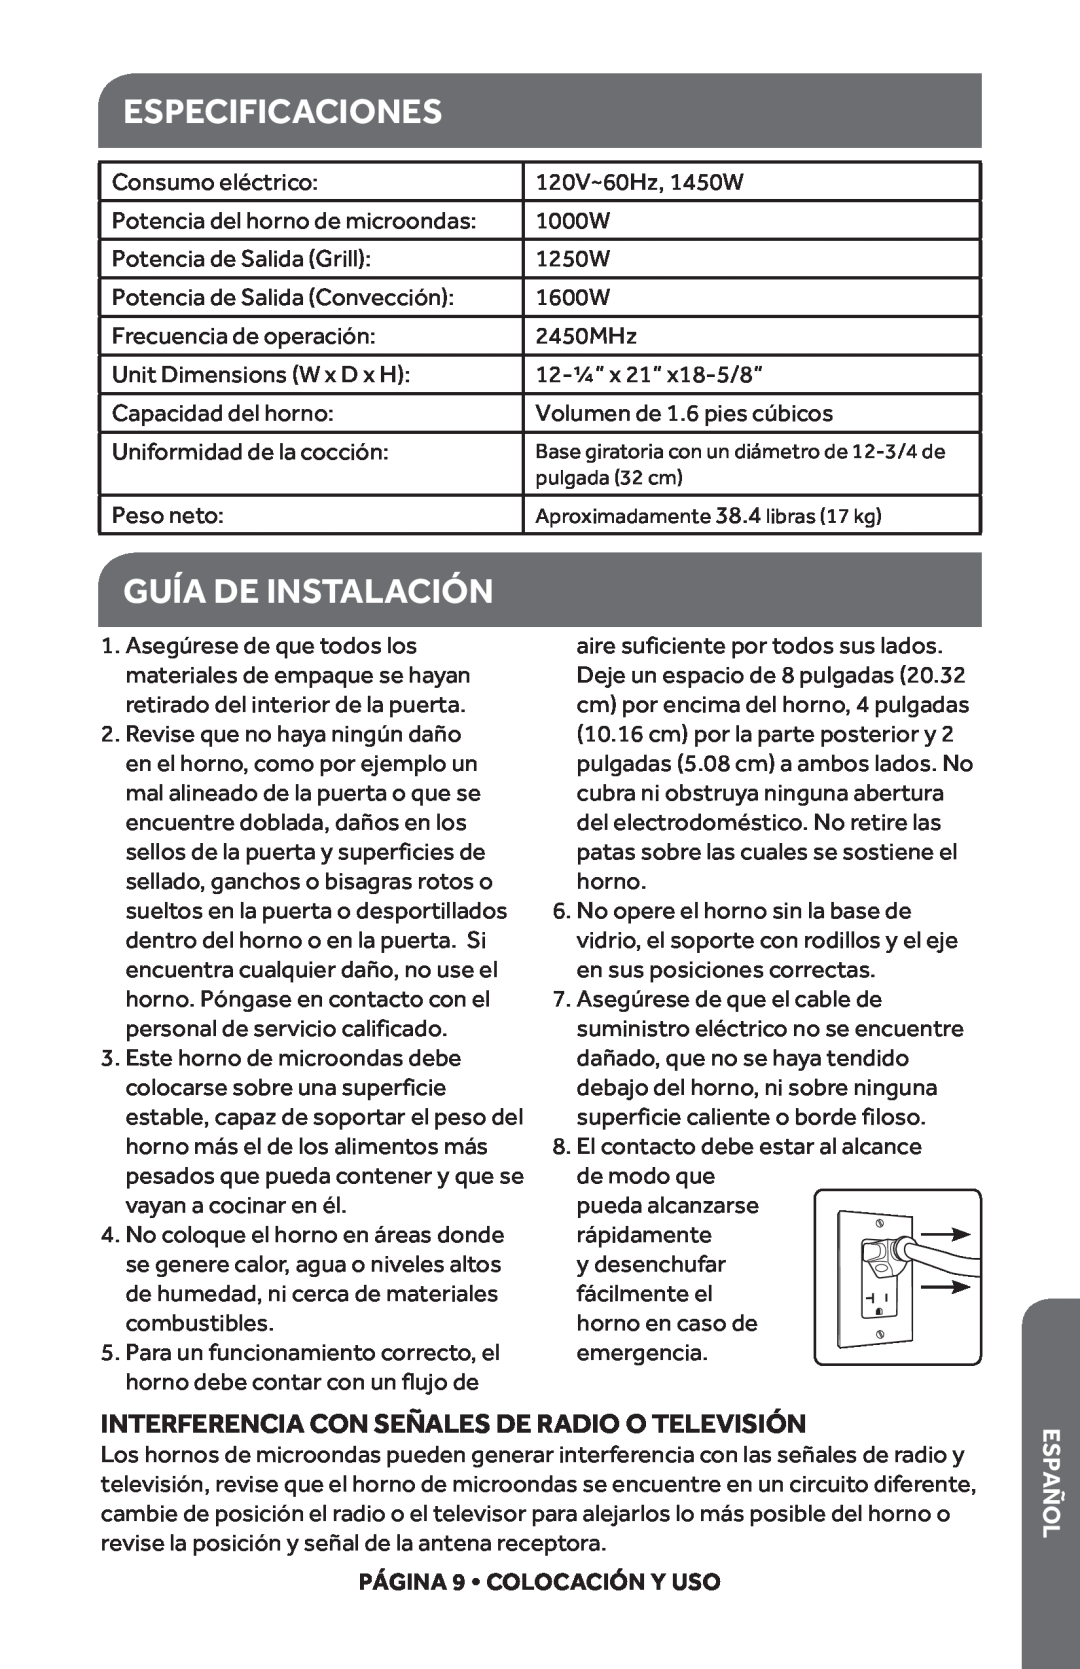 Haier HMC1685SESS user manual Especificaciones, Guía De Instalación, Interferencia Con Señales De Radio O Televisión, añEsp 